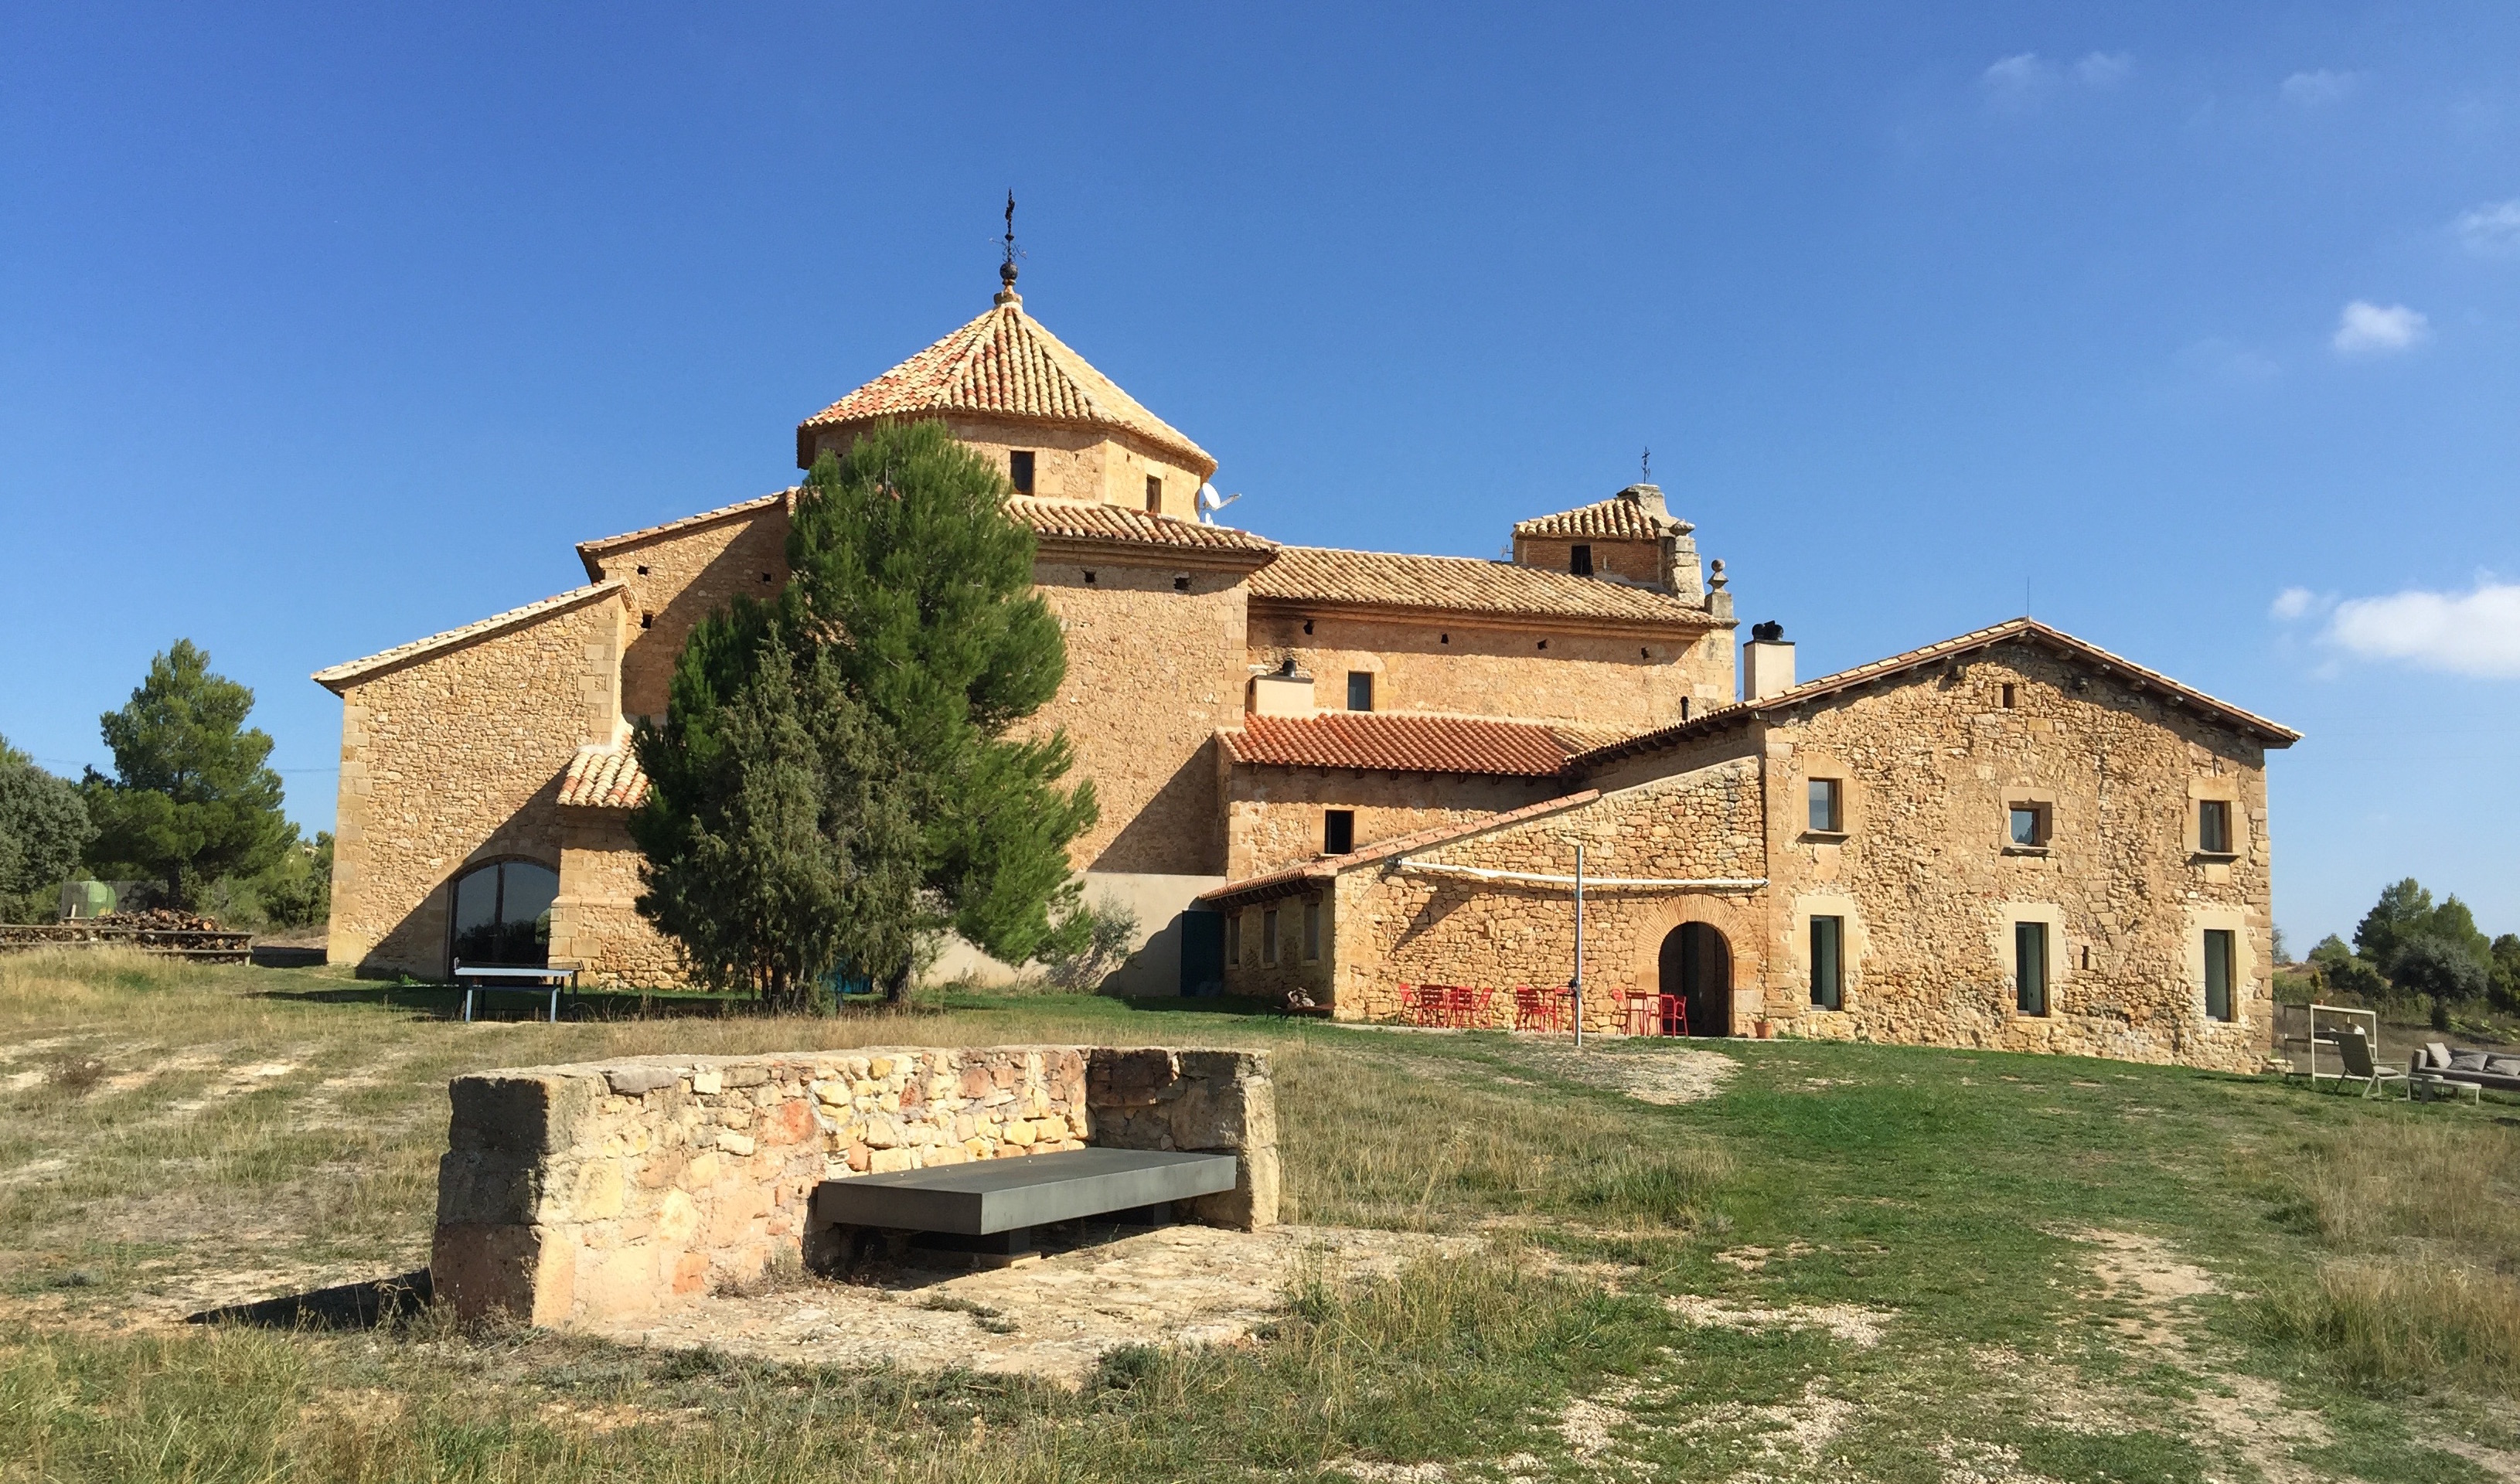 3262Hotel Consolación, cuando la rehabilitación de la antigua casa de un ermitaño da lugar a un singular hotel. Monroyo, Teruel.